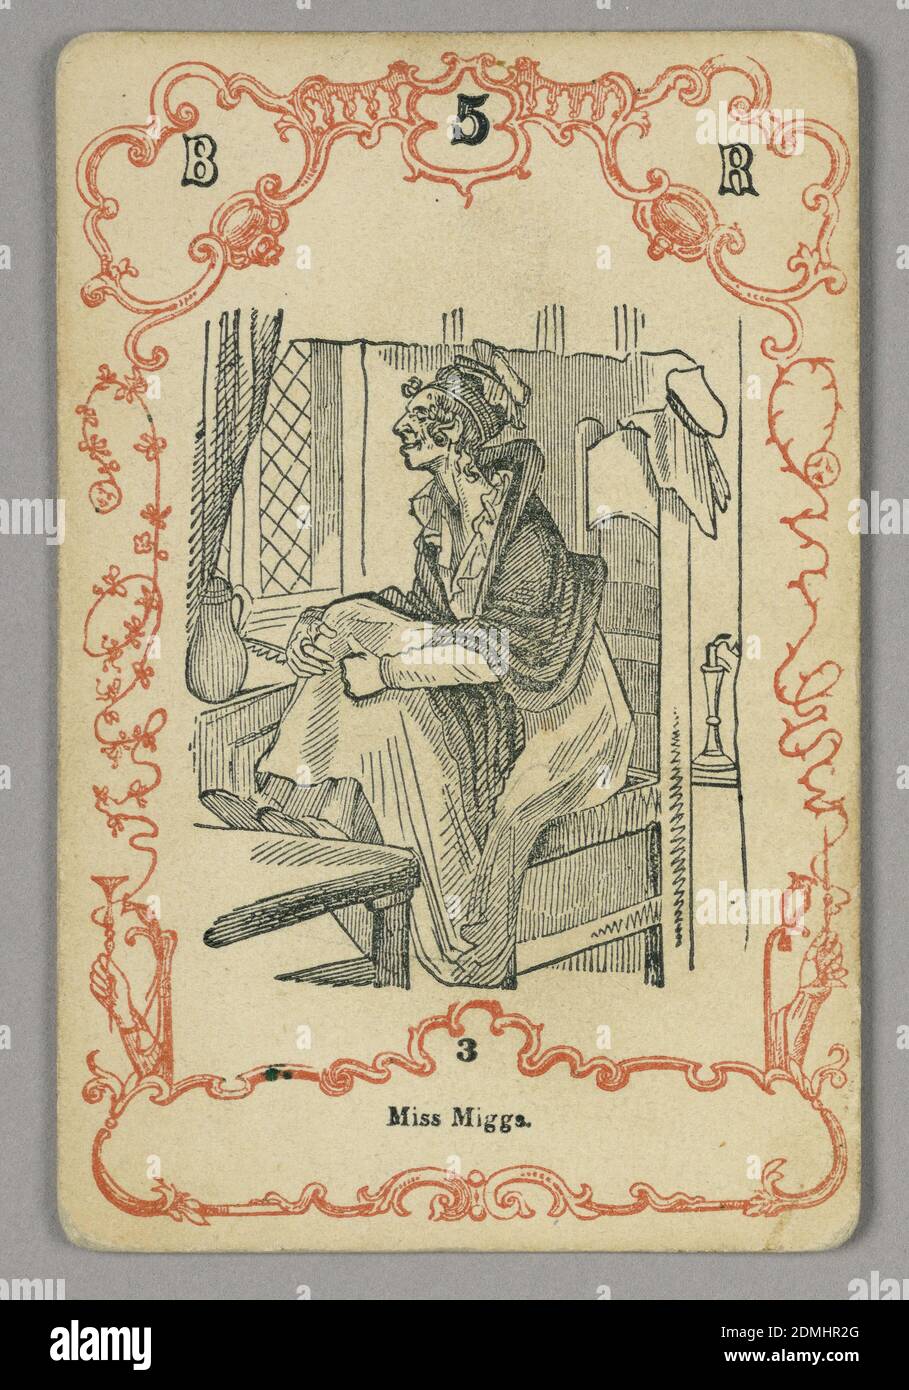 Spielkarte, rote und schwarze Tinte, Papier, oben nummerierte Karte: B 5 R; unten Mittelbild: 3, Europa, ca. 1855, Spielkarte Stockfoto